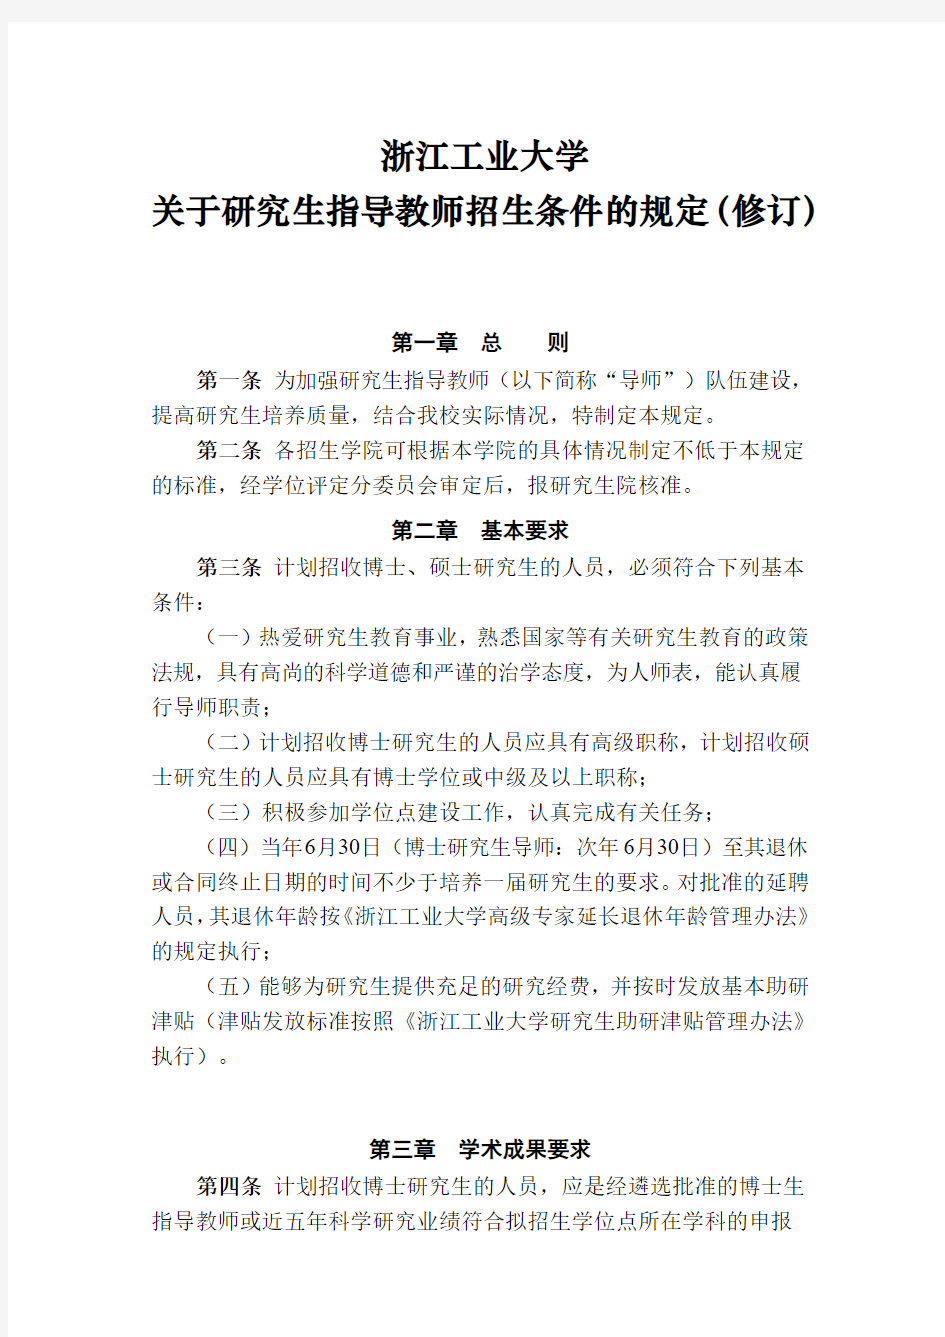 浙江工业大学关于研究生指导教师招生条件的规定(2017年修订)